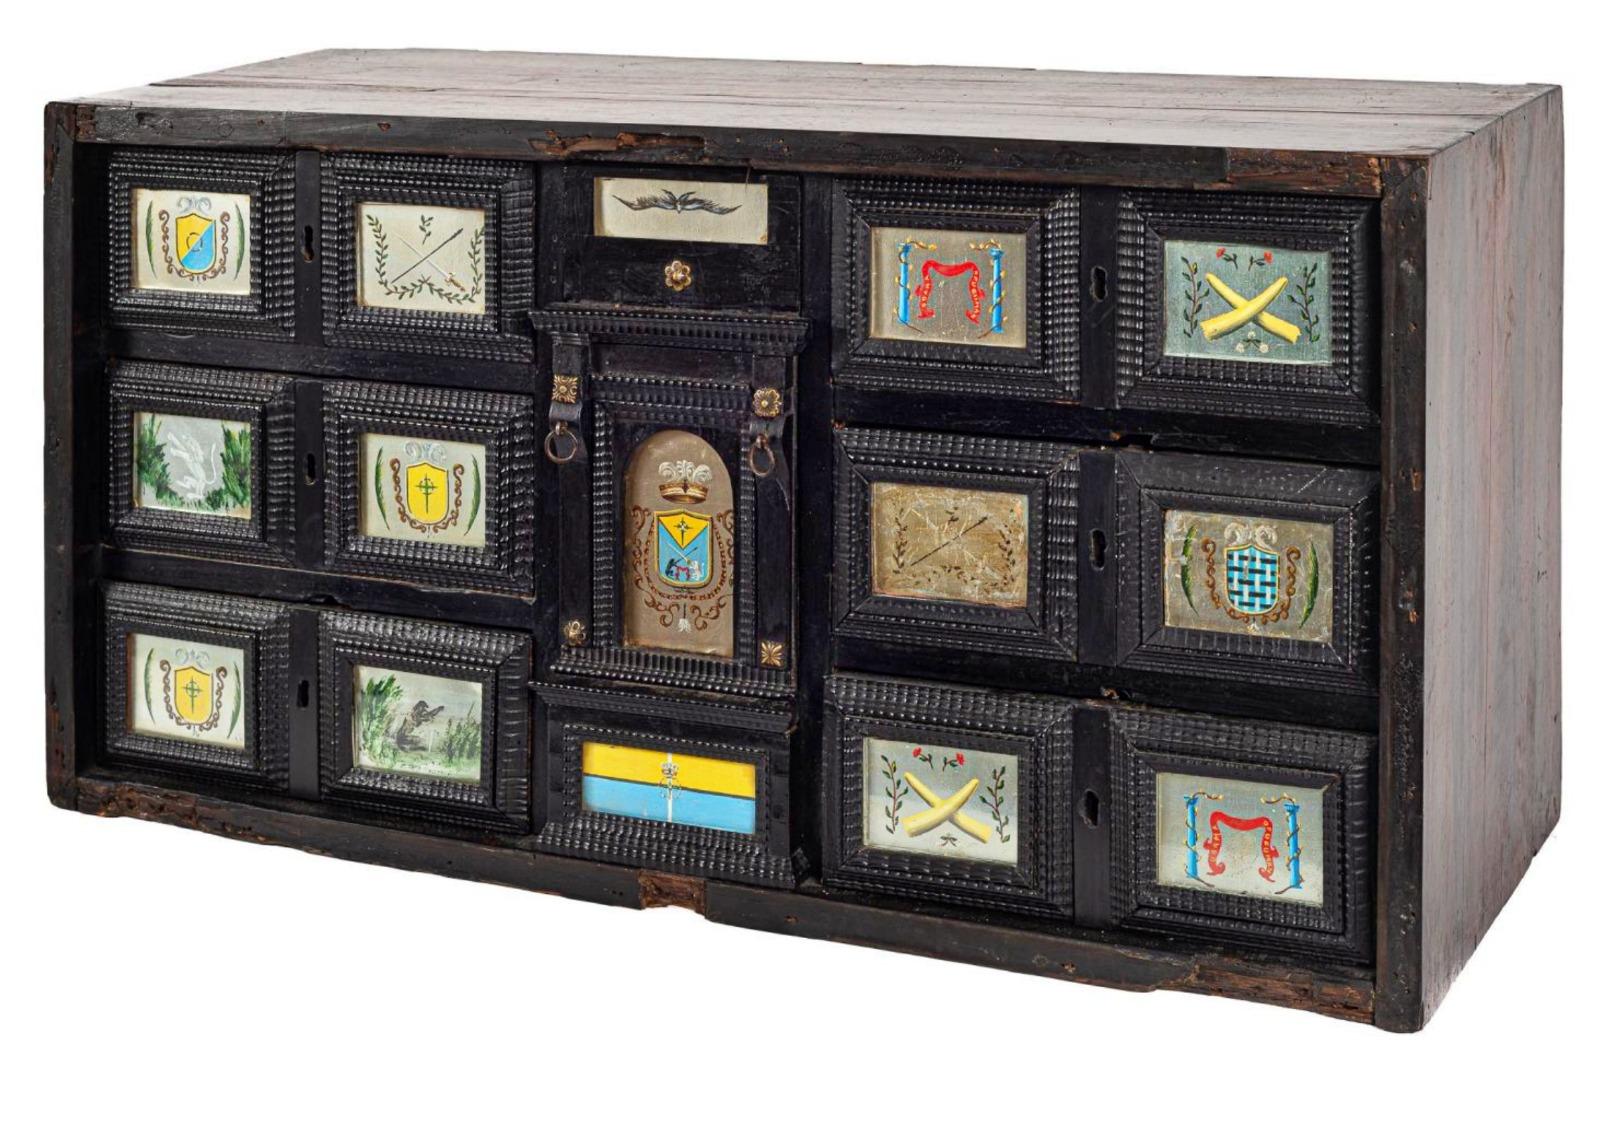 Corbeille à cercueil flamande, XVIIe siècle
En bois de noyer et ébonisé. Neuf tiroirs avec façades en miroir peint.
38 x 73,5 x 30 cm.
bon état.